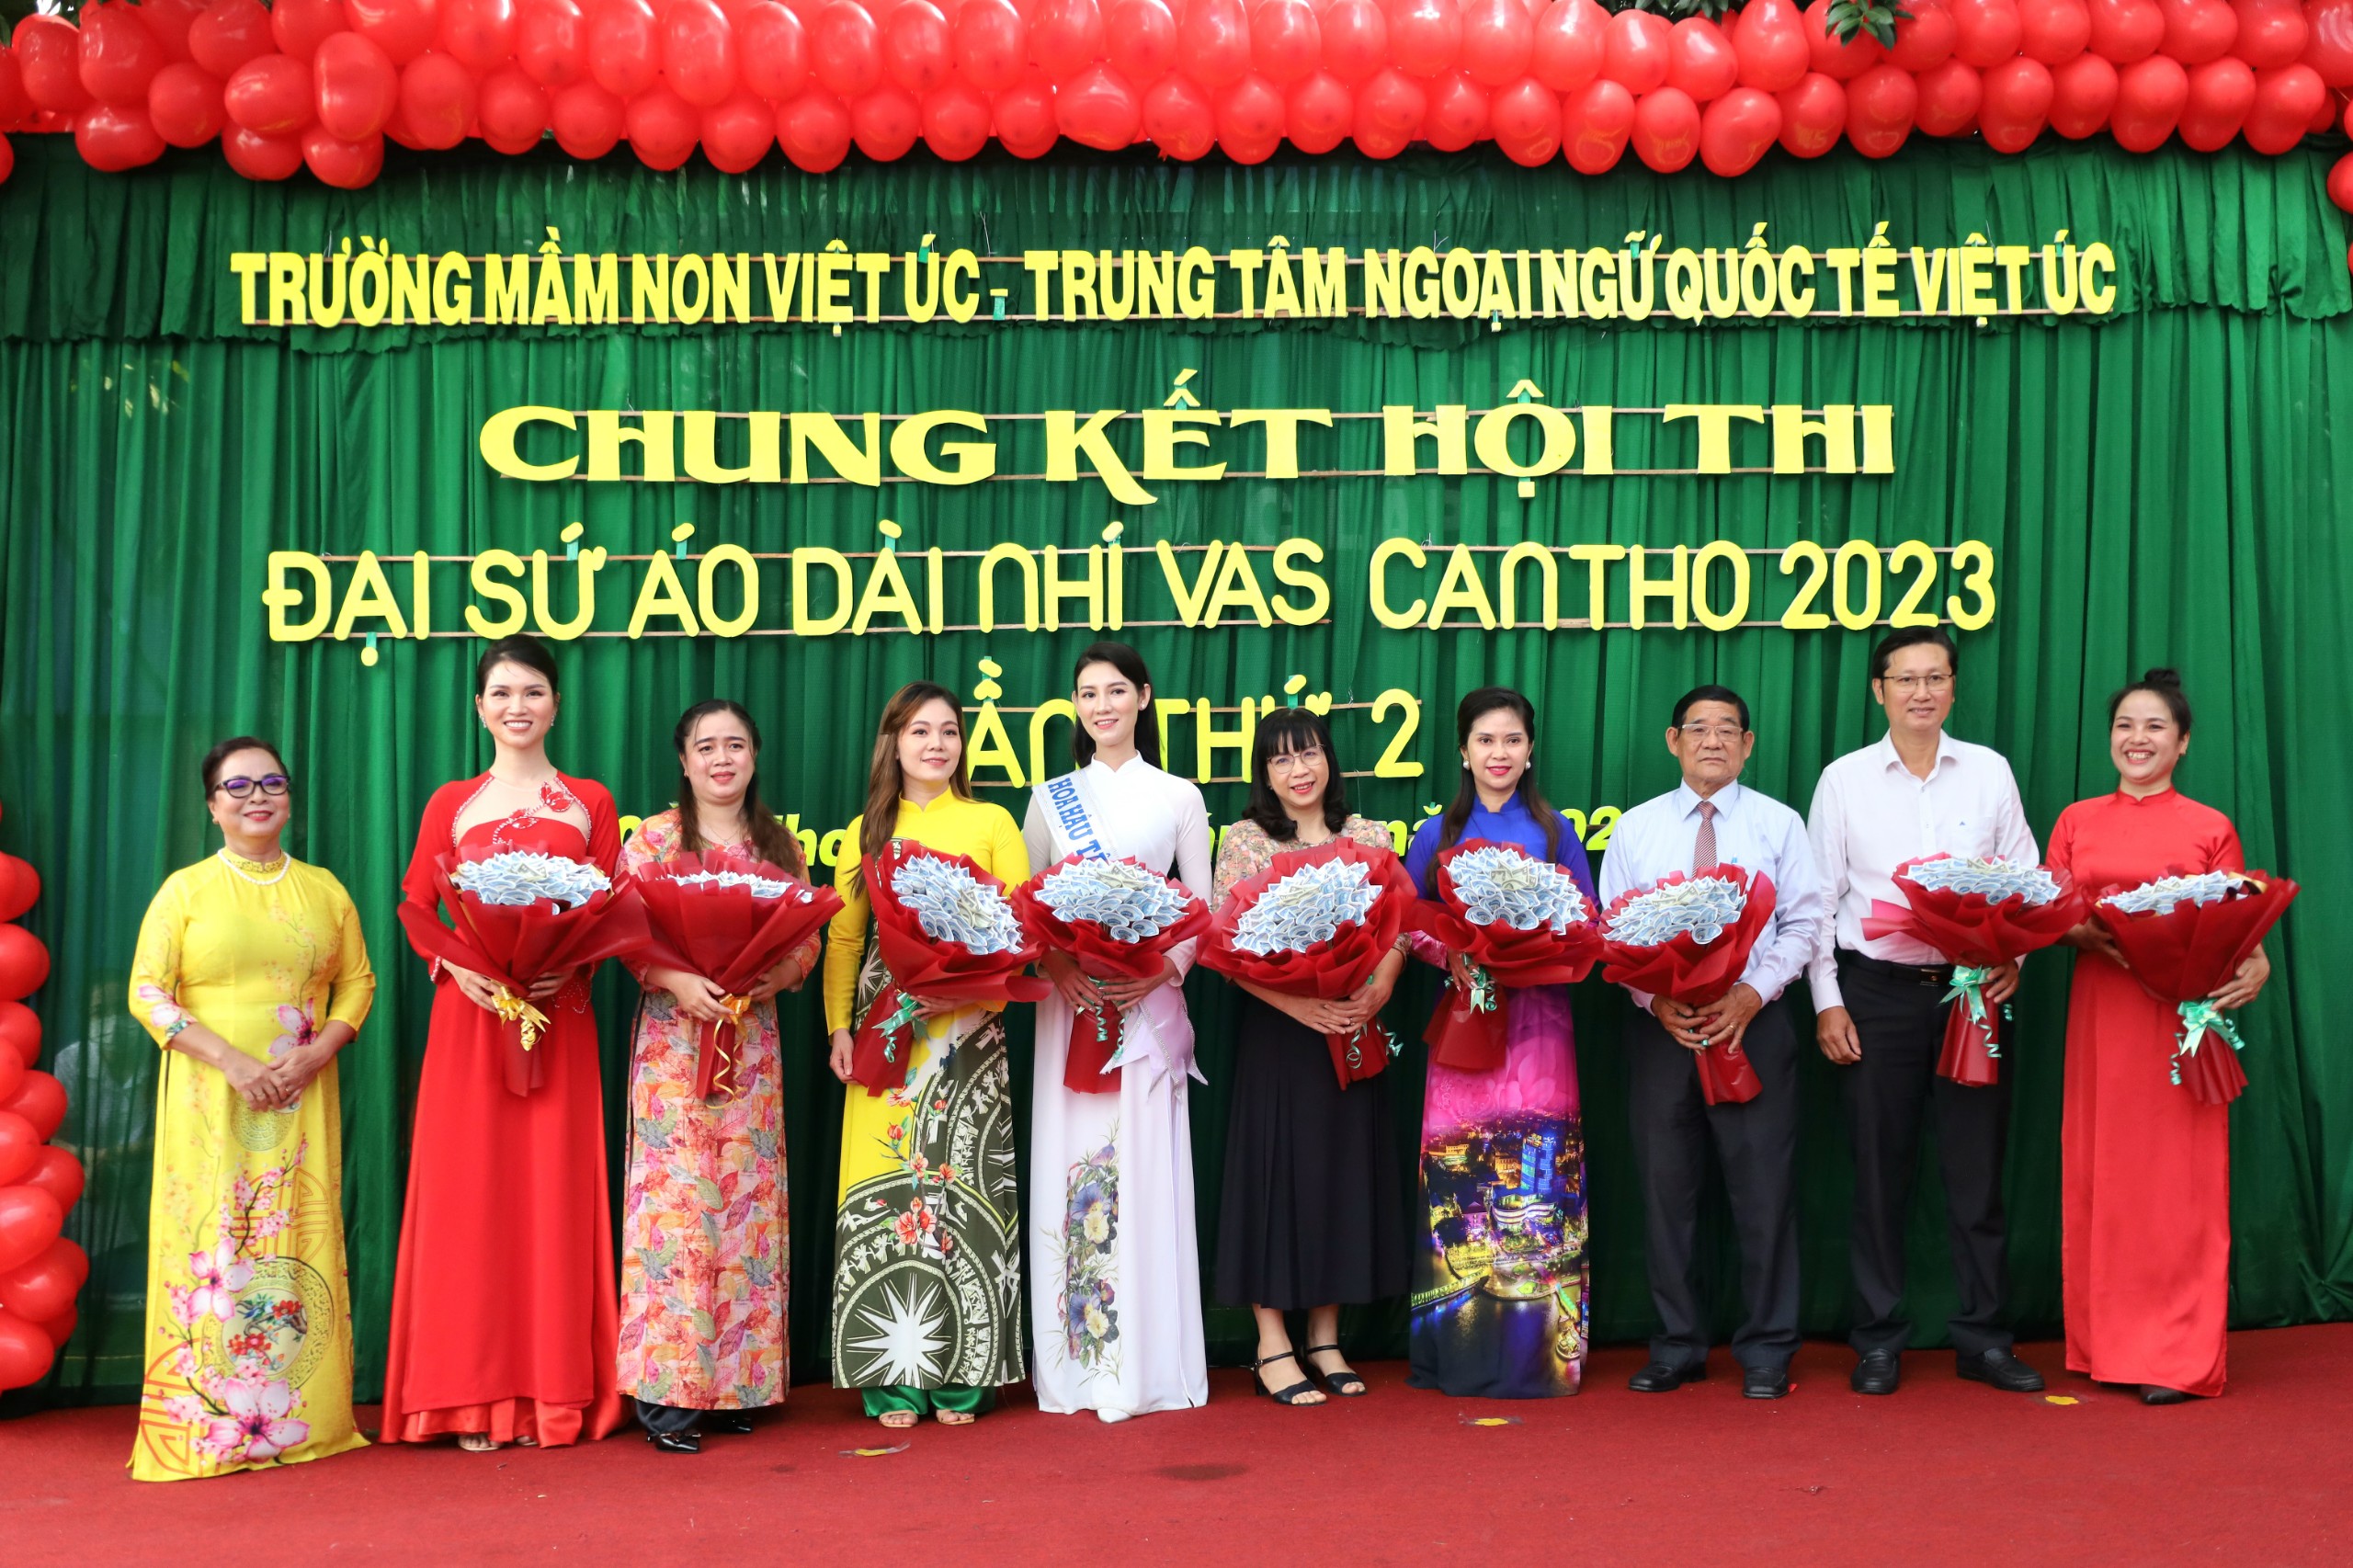 Cô Hà Kim Thoa - Chủ tịch Hội đồng quản trị trường Mầm non Việt Úc tặng hoa cho các đại biểu khách mời, ban giám khảo và các đơn vị đồng hành cùng hội thi.